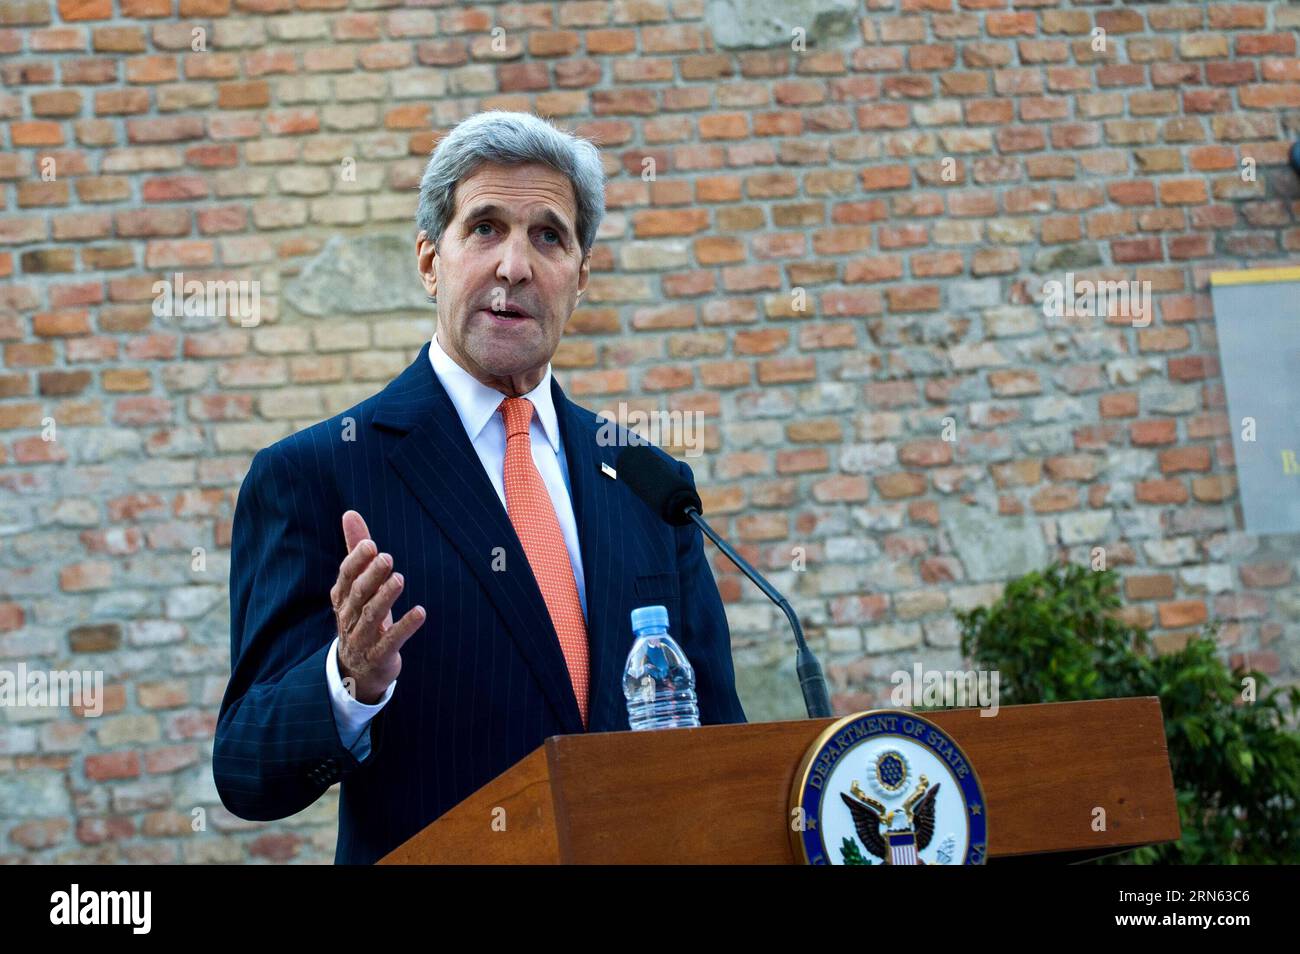 (150709) -- VIENNA, 9 luglio 2015 -- il Segretario di Stato americano John Kerry parla durante una conferenza stampa di fronte al Palais Coburg, dove si svolgono i colloqui nucleari iraniani, a Vienna, in Austria, 9 luglio 2015. John Kerry giovedì ha detto che alcune delle questioni difficili rimangono irrisolte nei colloqui nucleari in corso, dicendo che decisioni difficili devono essere prese molto presto. ) COLLOQUI NUCLEARI AUSTRIA-VIENNA-IRAN-JOHN KERRY QianxYi PUBLICATIONxNOTxINxCHN 150709 Vienna 9 luglio 2015 il Segretario di Stato Degli Stati Uniti John Kerry parla durante una conferenza stampa di fronte al Palais Coburg, dove si svolgono i colloqui nucleari in Iran Foto Stock